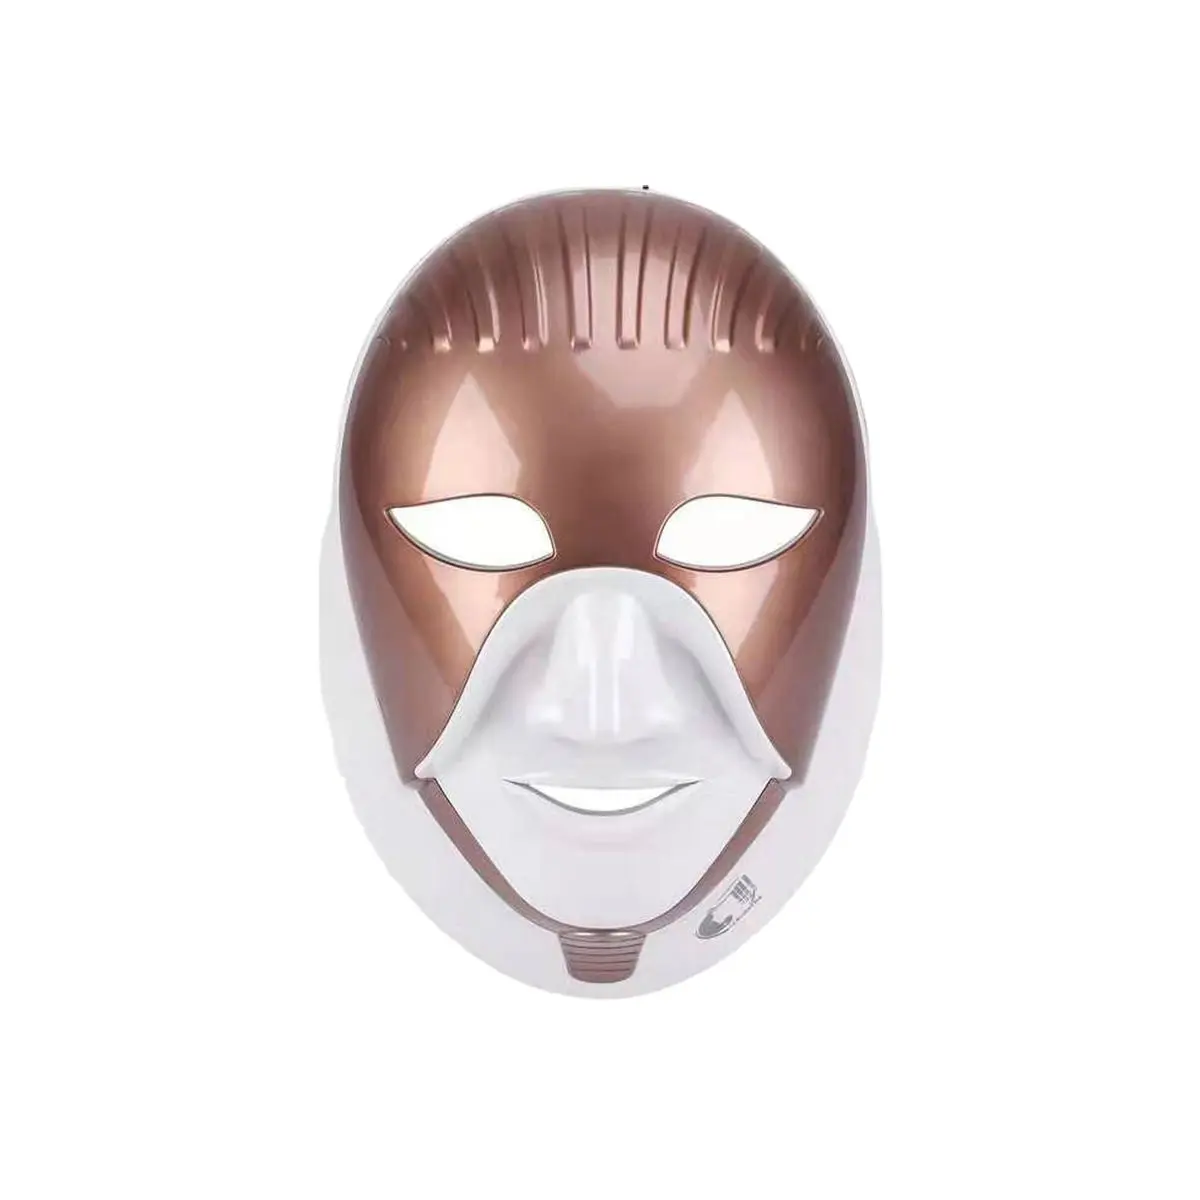 7 renk LED yüz maskesi kleopatra kırışıklıkları kaybolur ve renkli renklerde çiller kaldırır maske güzellik enstrüman USB teknolojisi